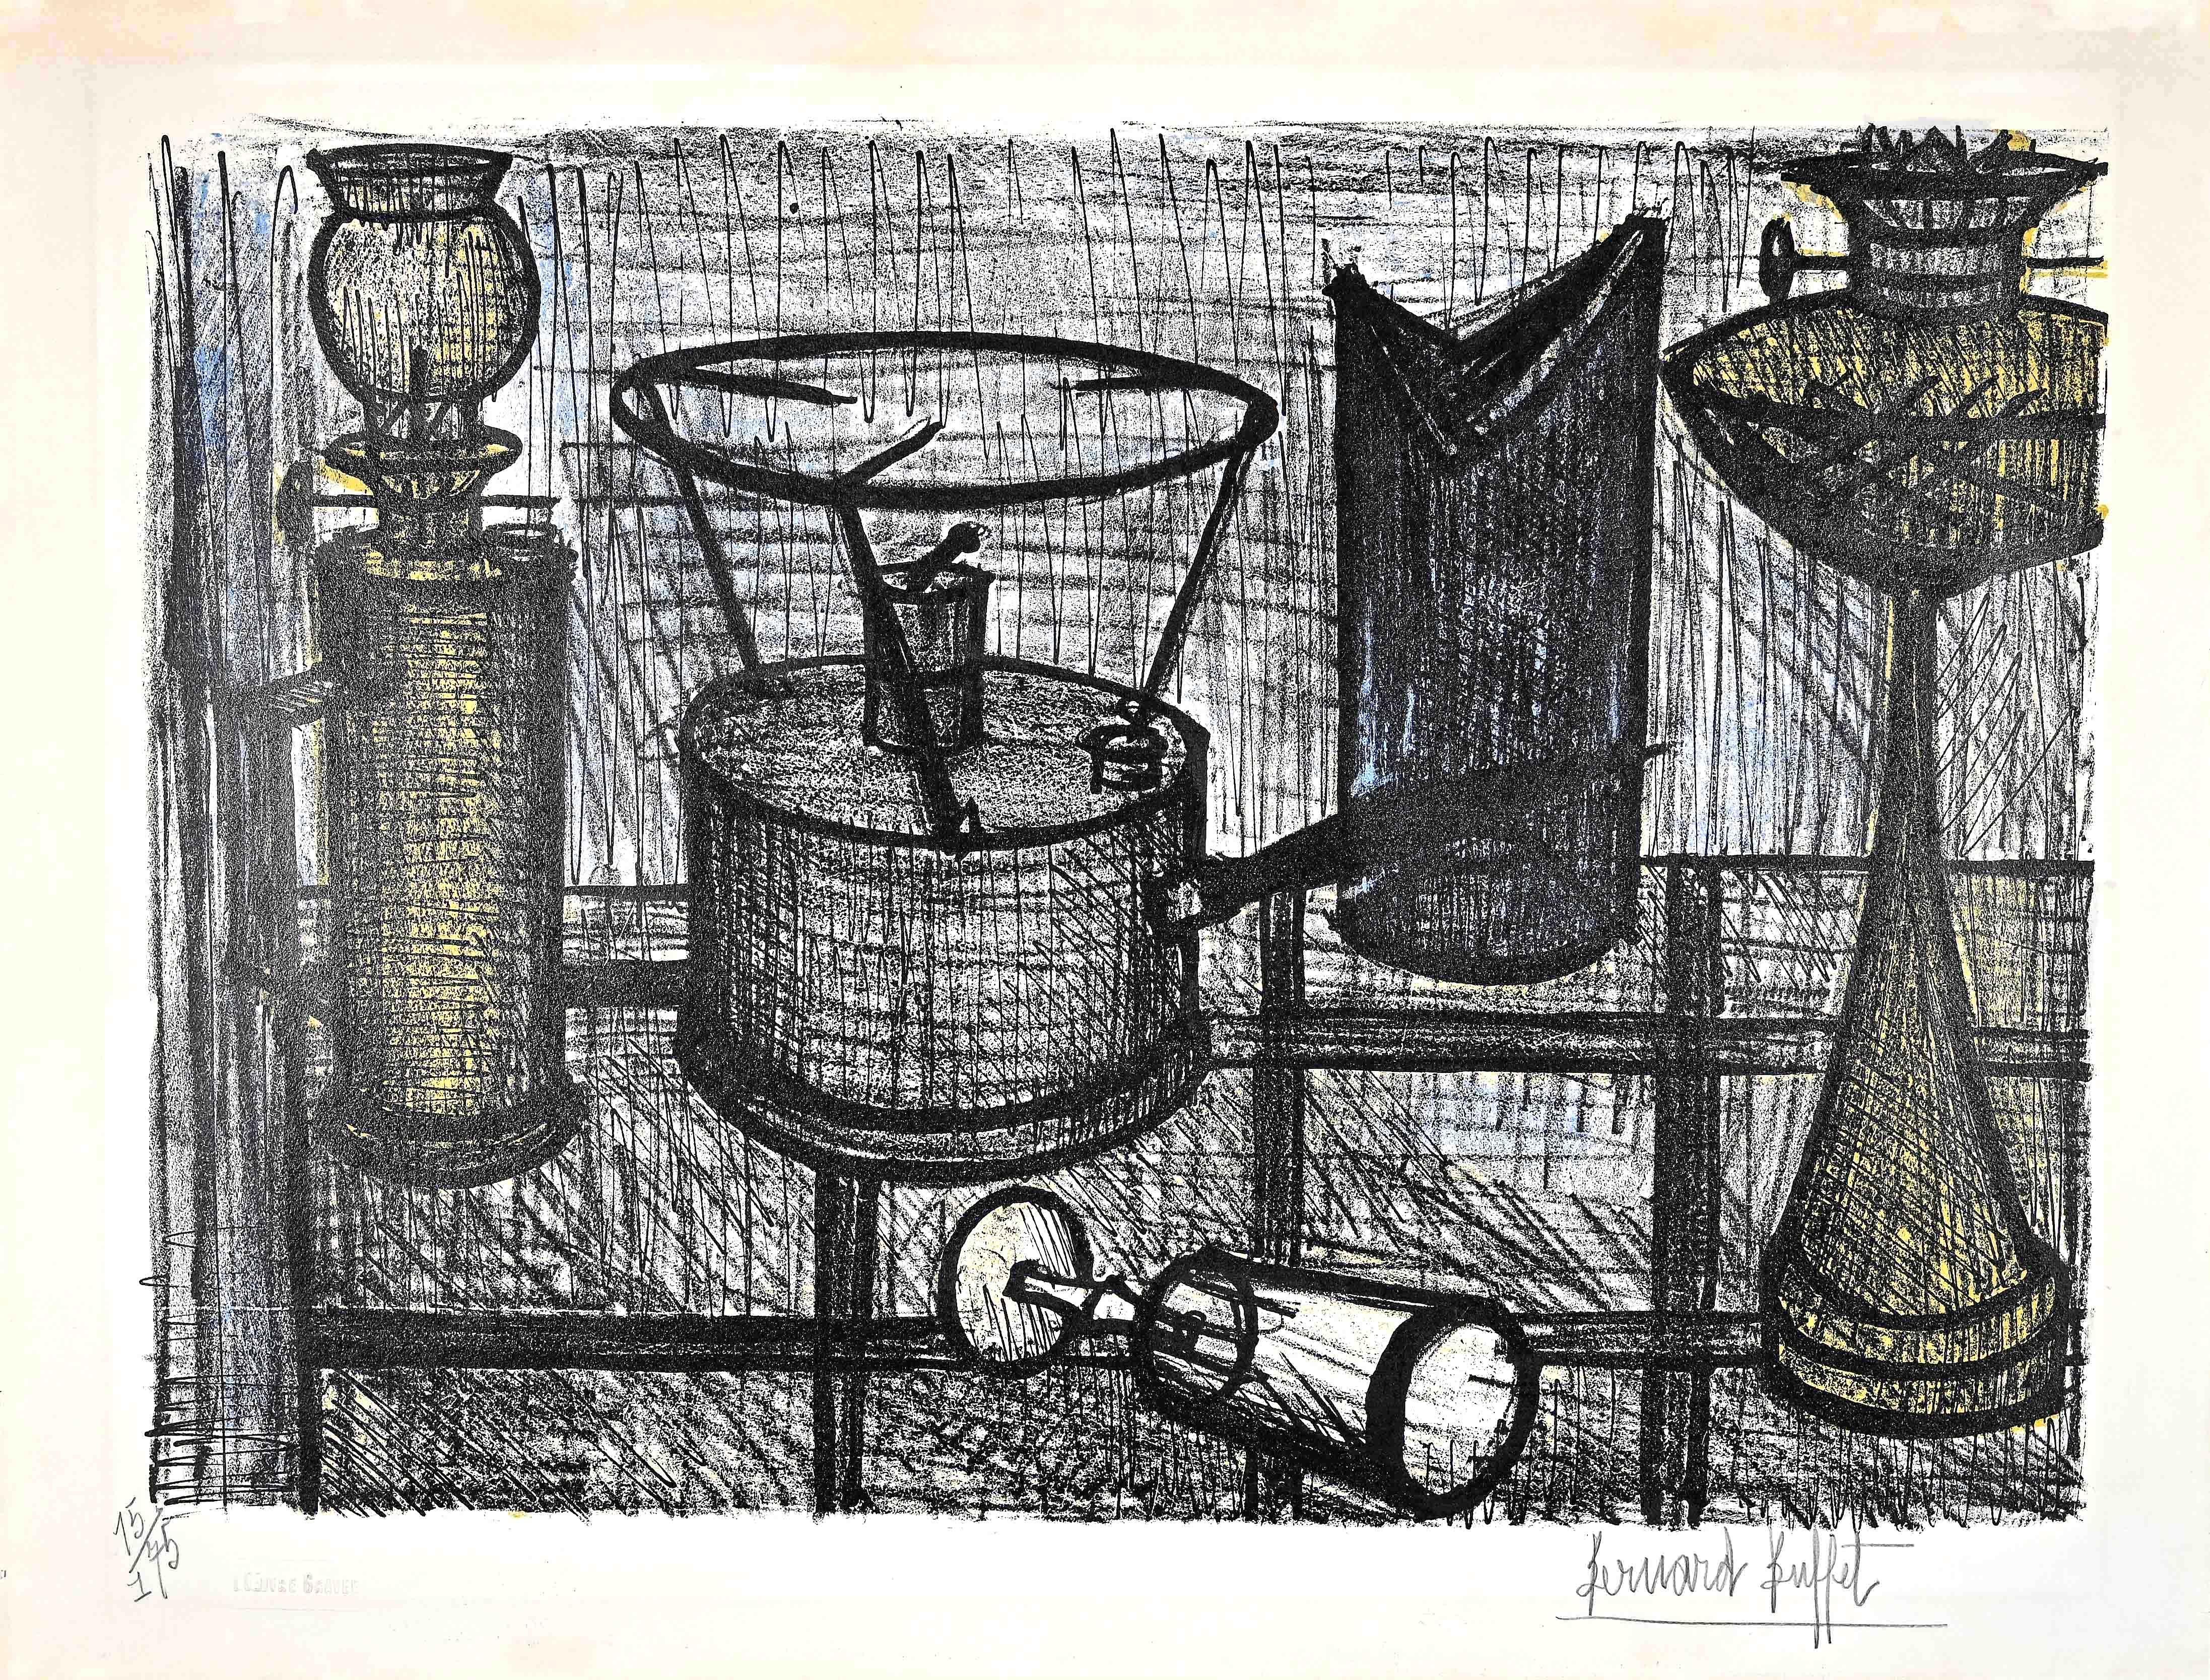 La lampe est une œuvre d'art originale réalisée par Bernard Buffet en 1954.

Lithographie en couleur sur papier vélin.

Signé à la main "Bernard Buffet" dans la marge inférieure droite. Numéroté en bas à gauche.  Edition de 15/175 num.
Pas avec